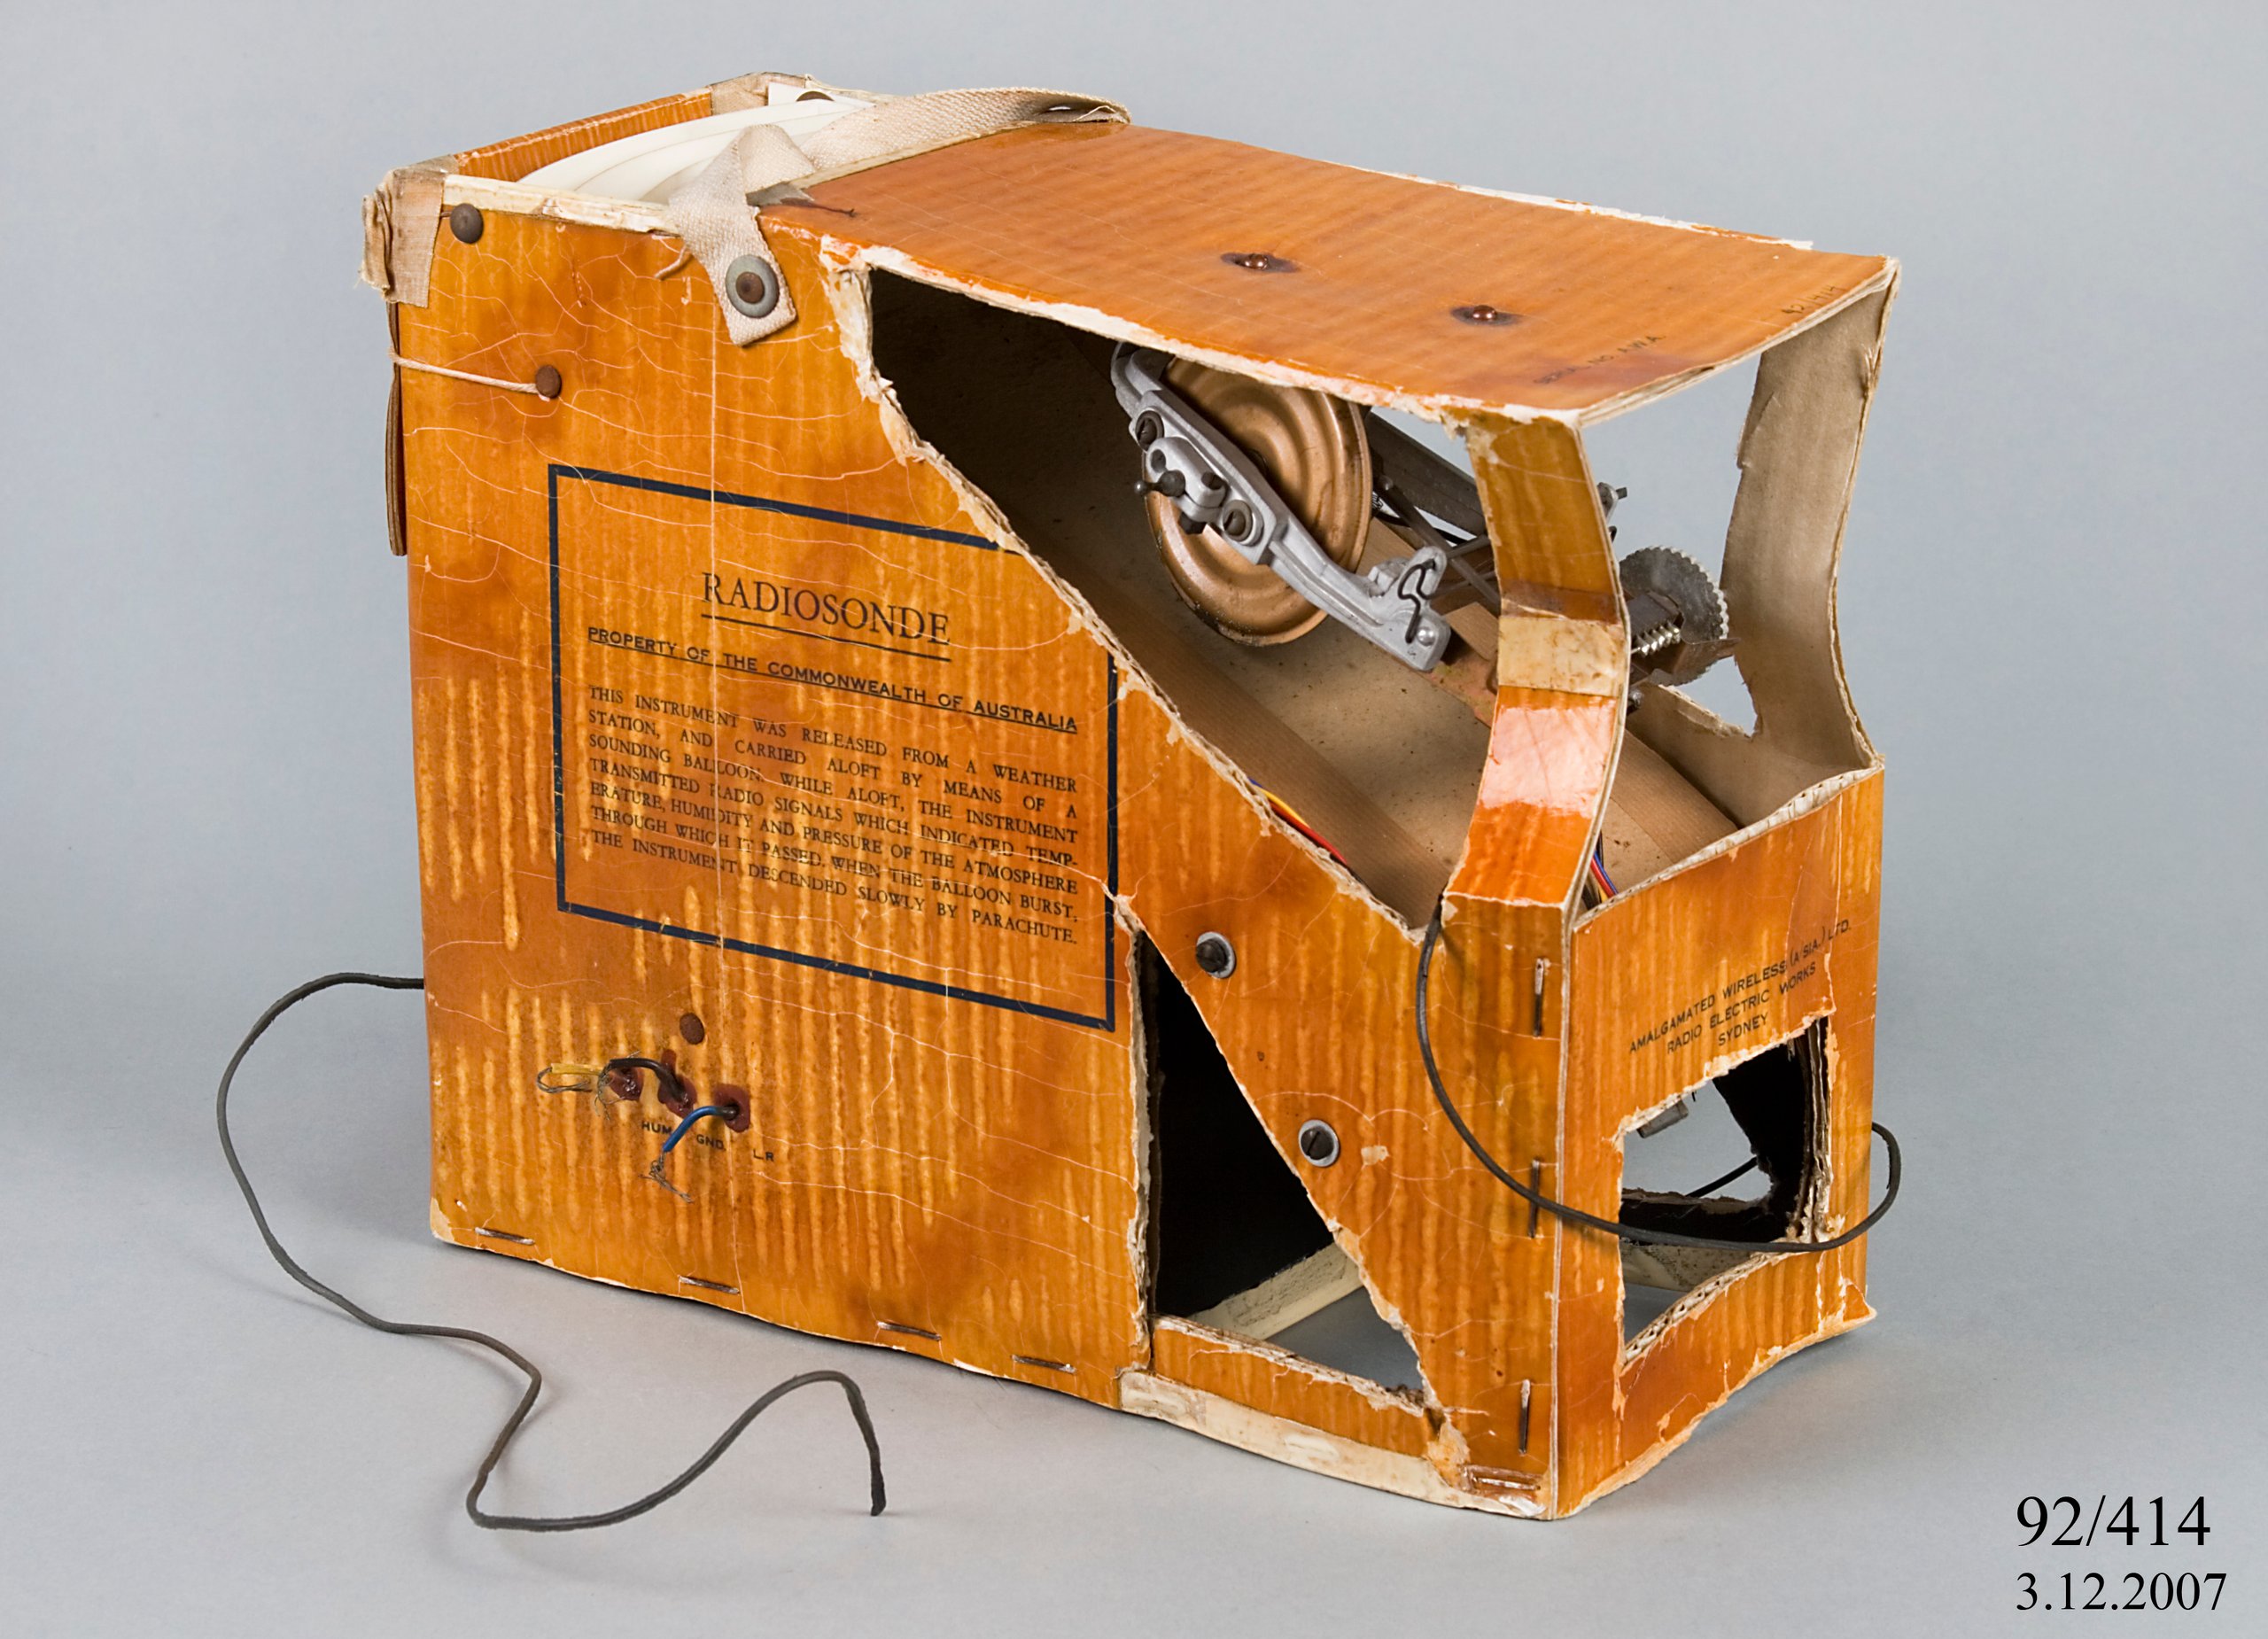 AWA radiosonde atmospheric measuring instrument